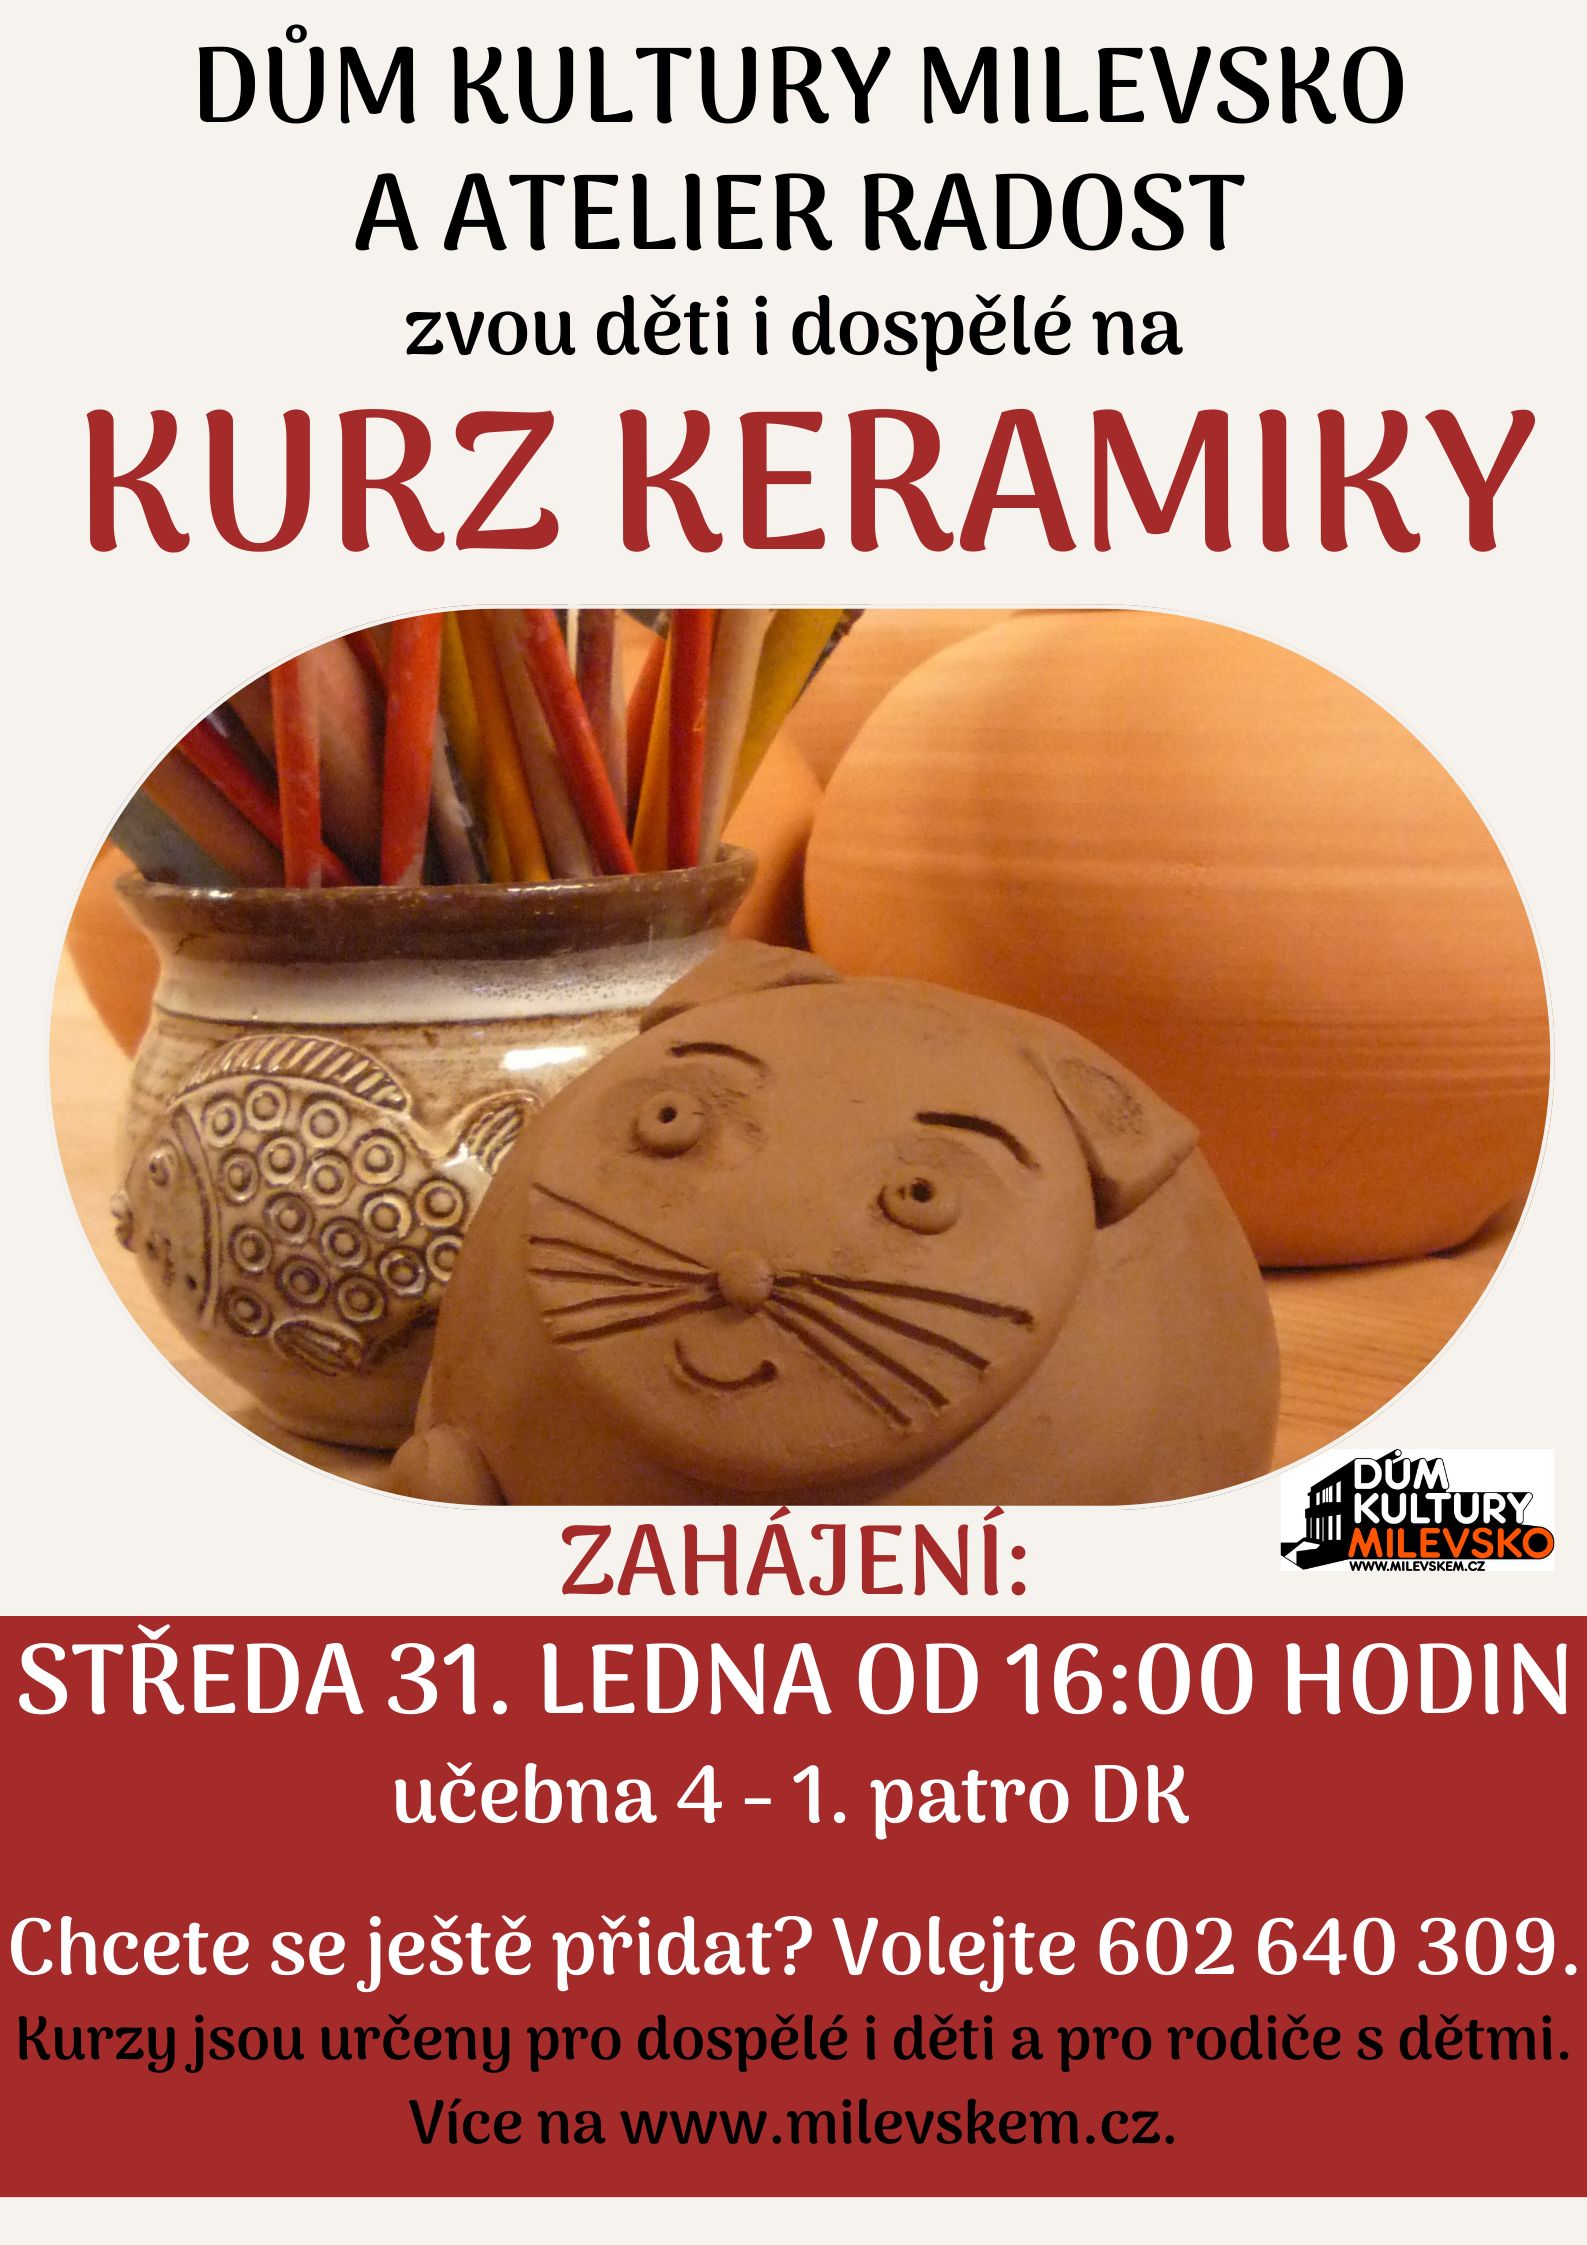 Plakát Kurz keramiky pro děti i dospělé - zahájení